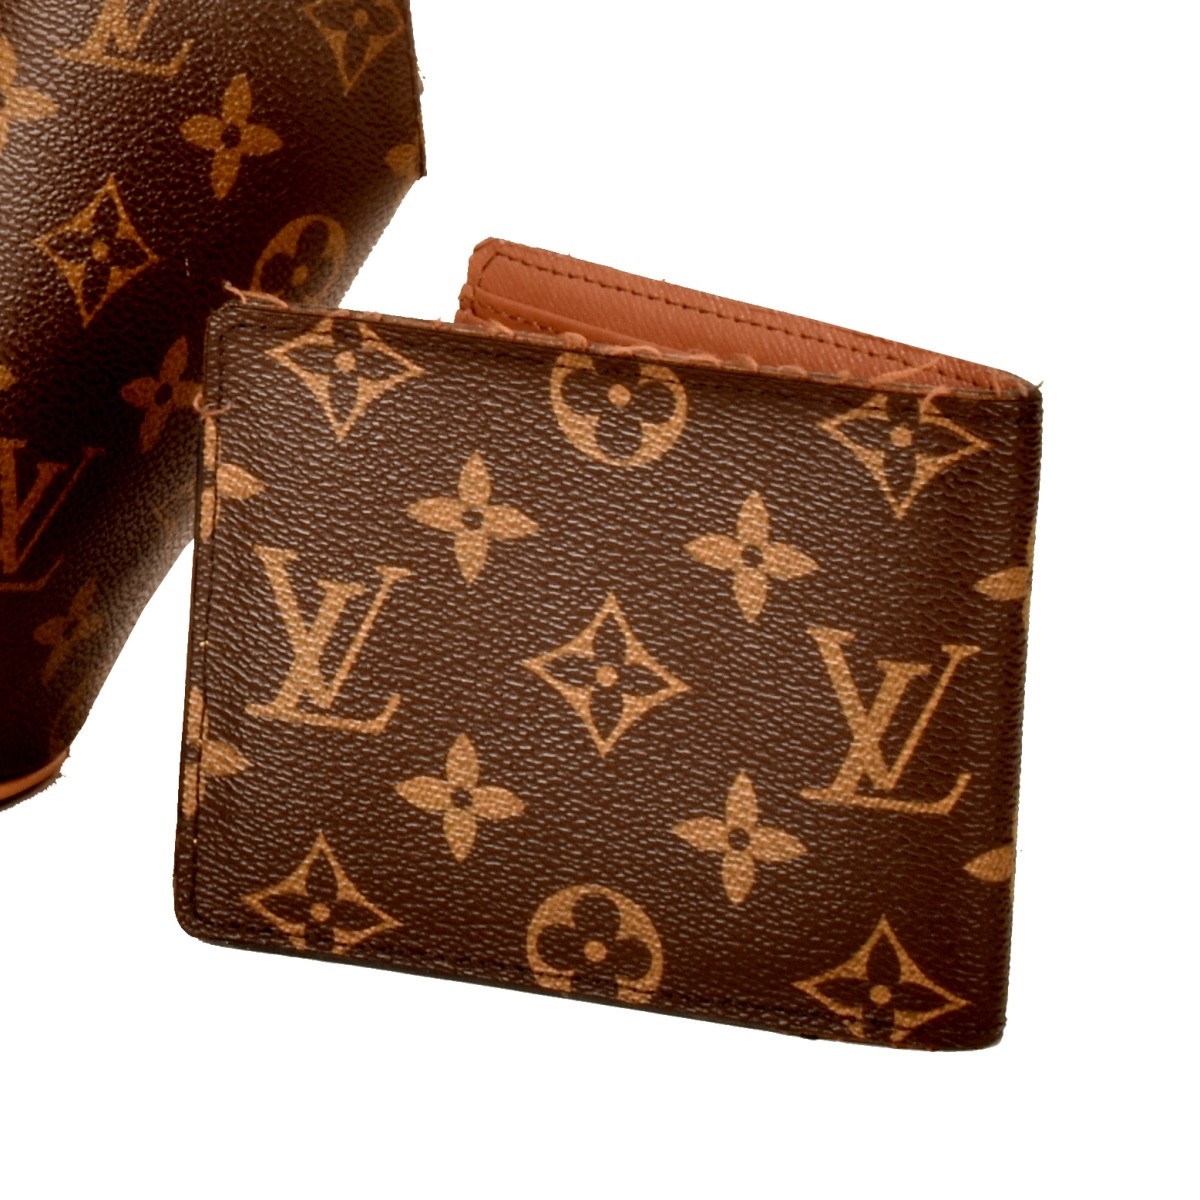 Replica Louis Vuitton Bag and Wallet